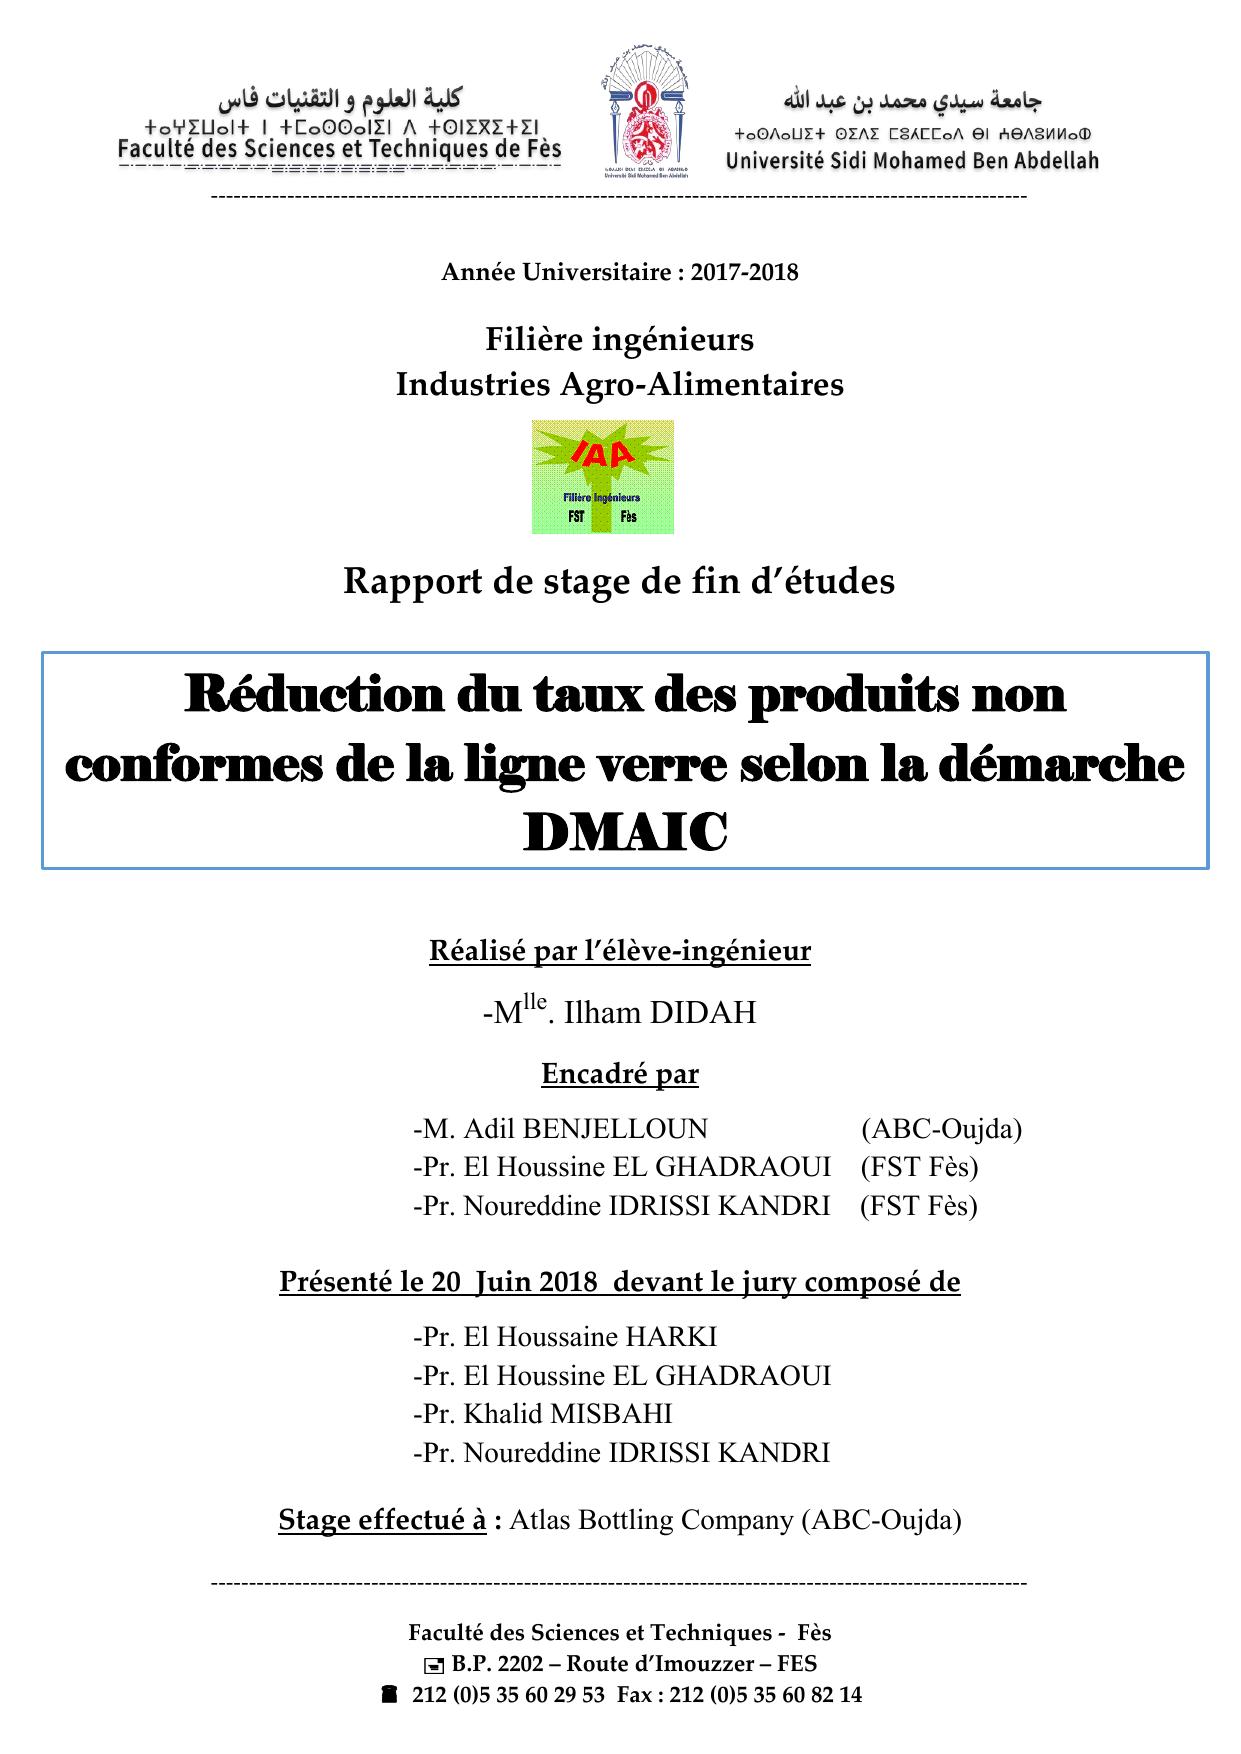 Réduction du taux des produits non conformes de la ligne verre selon la démarche DMAIC